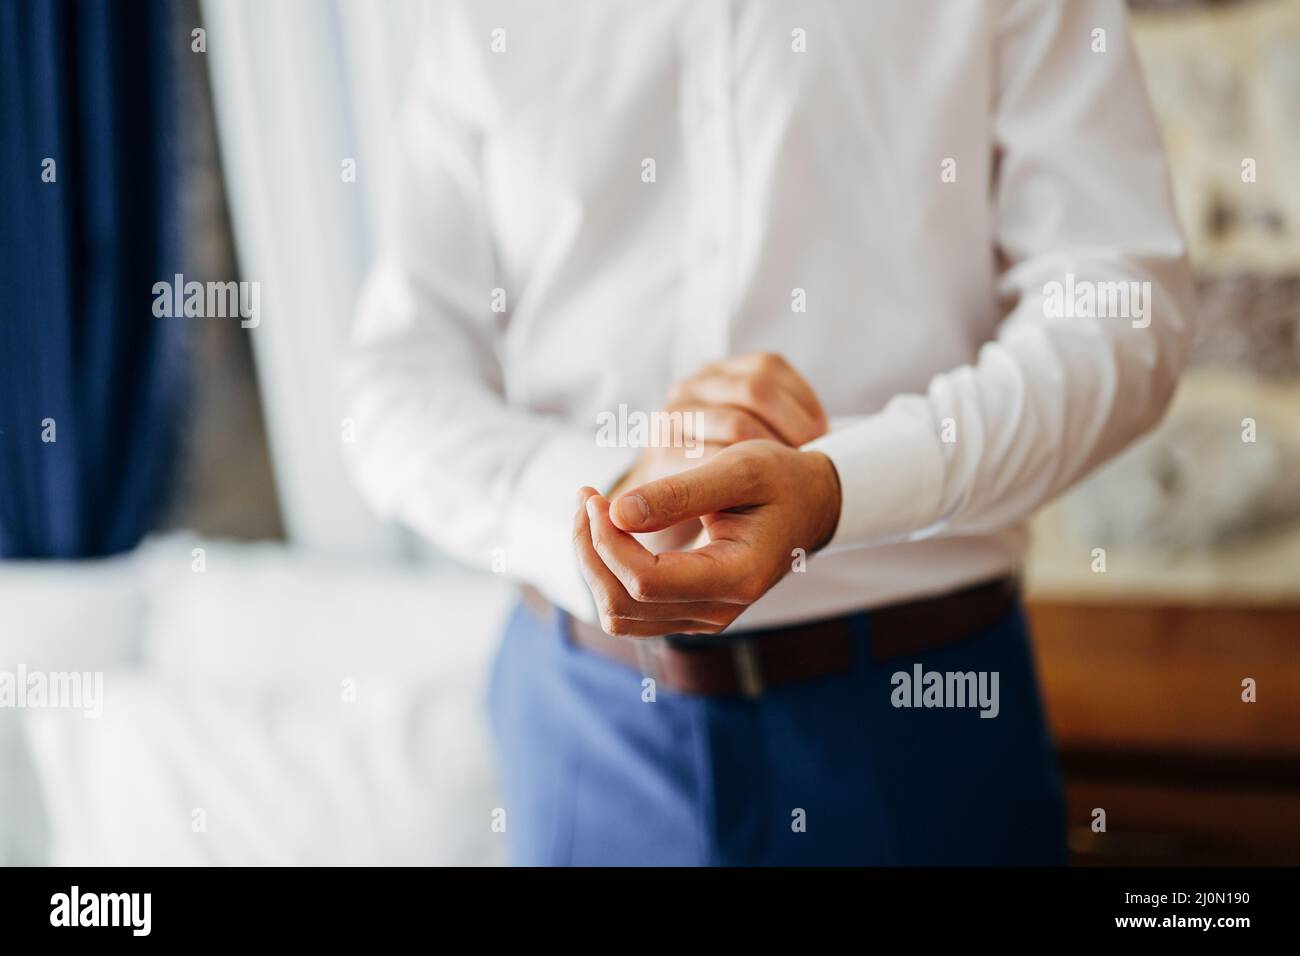 Uomo in pantaloni blu bottoni un bottone sul polsino di una camicia bianca. Primo piano Foto Stock